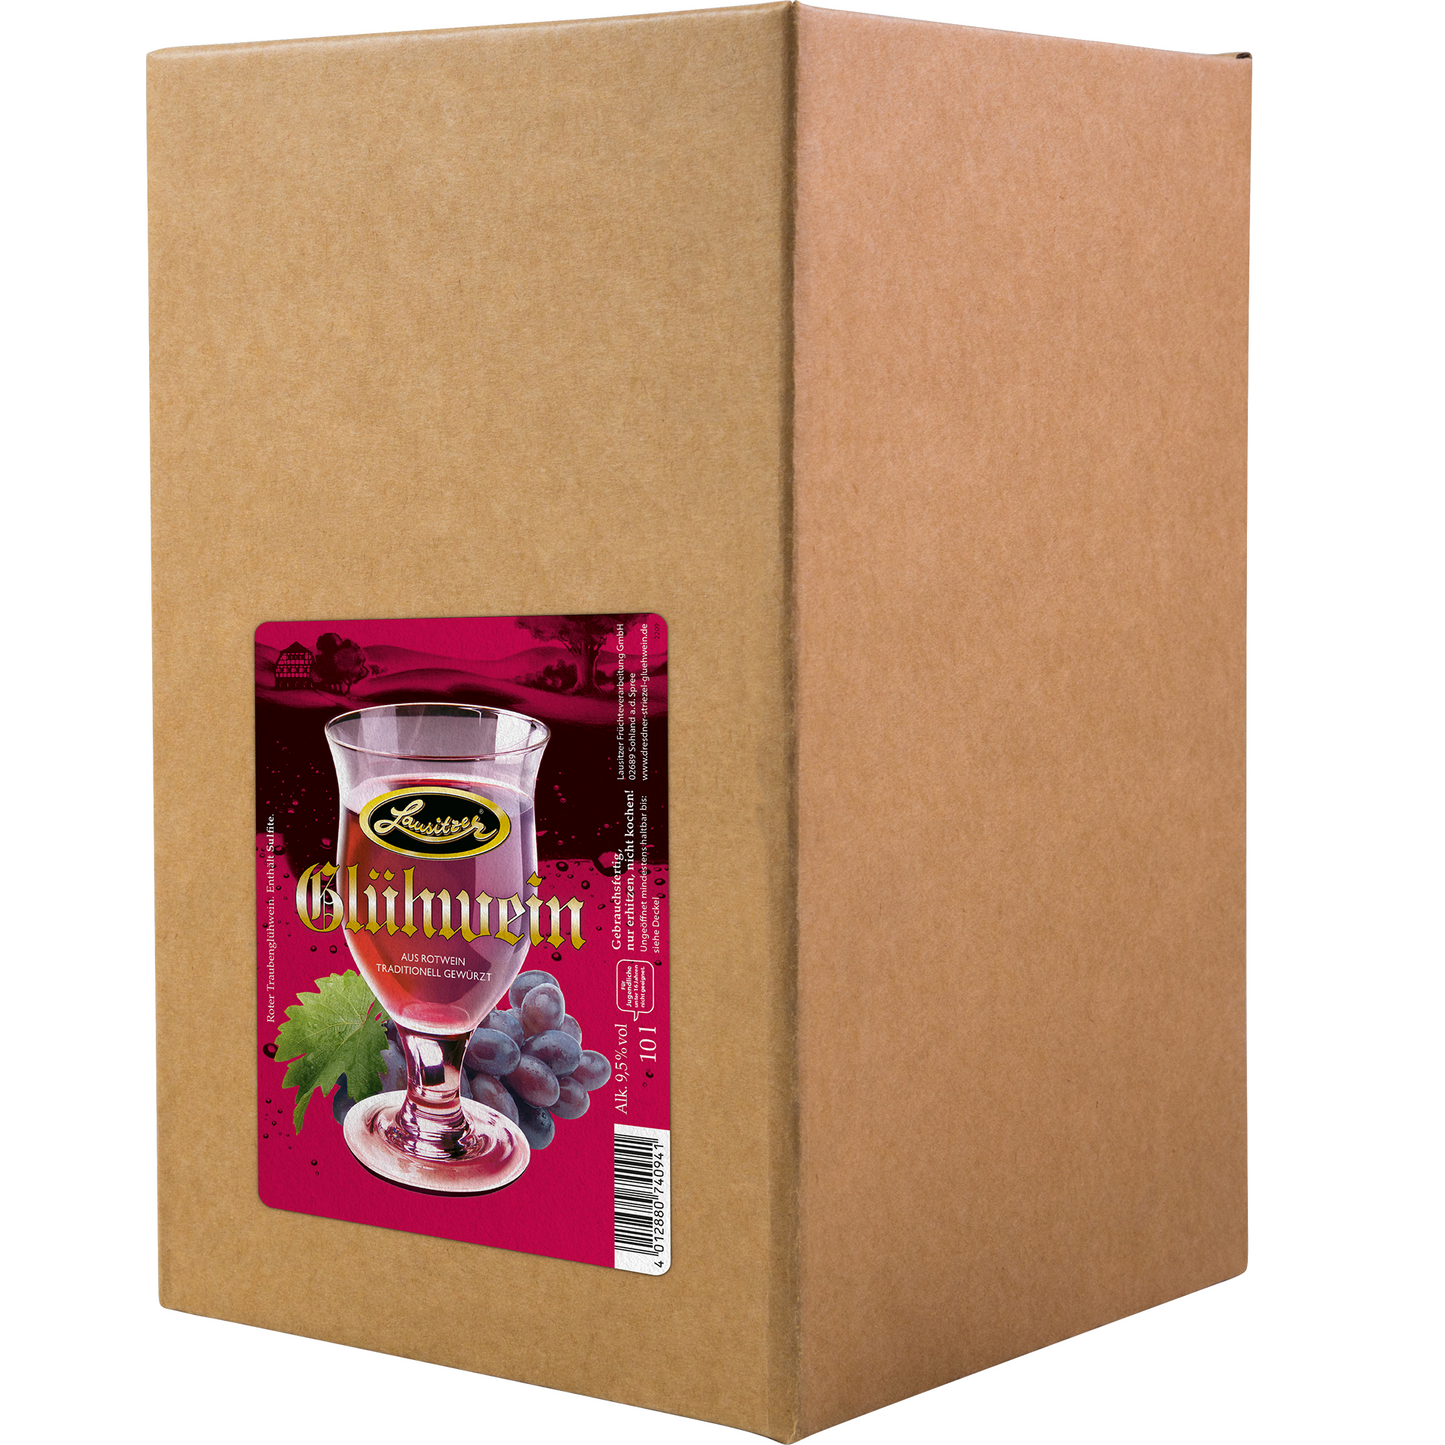 Lausitzer Glühwein - Rote Traube Bag in Box 10l